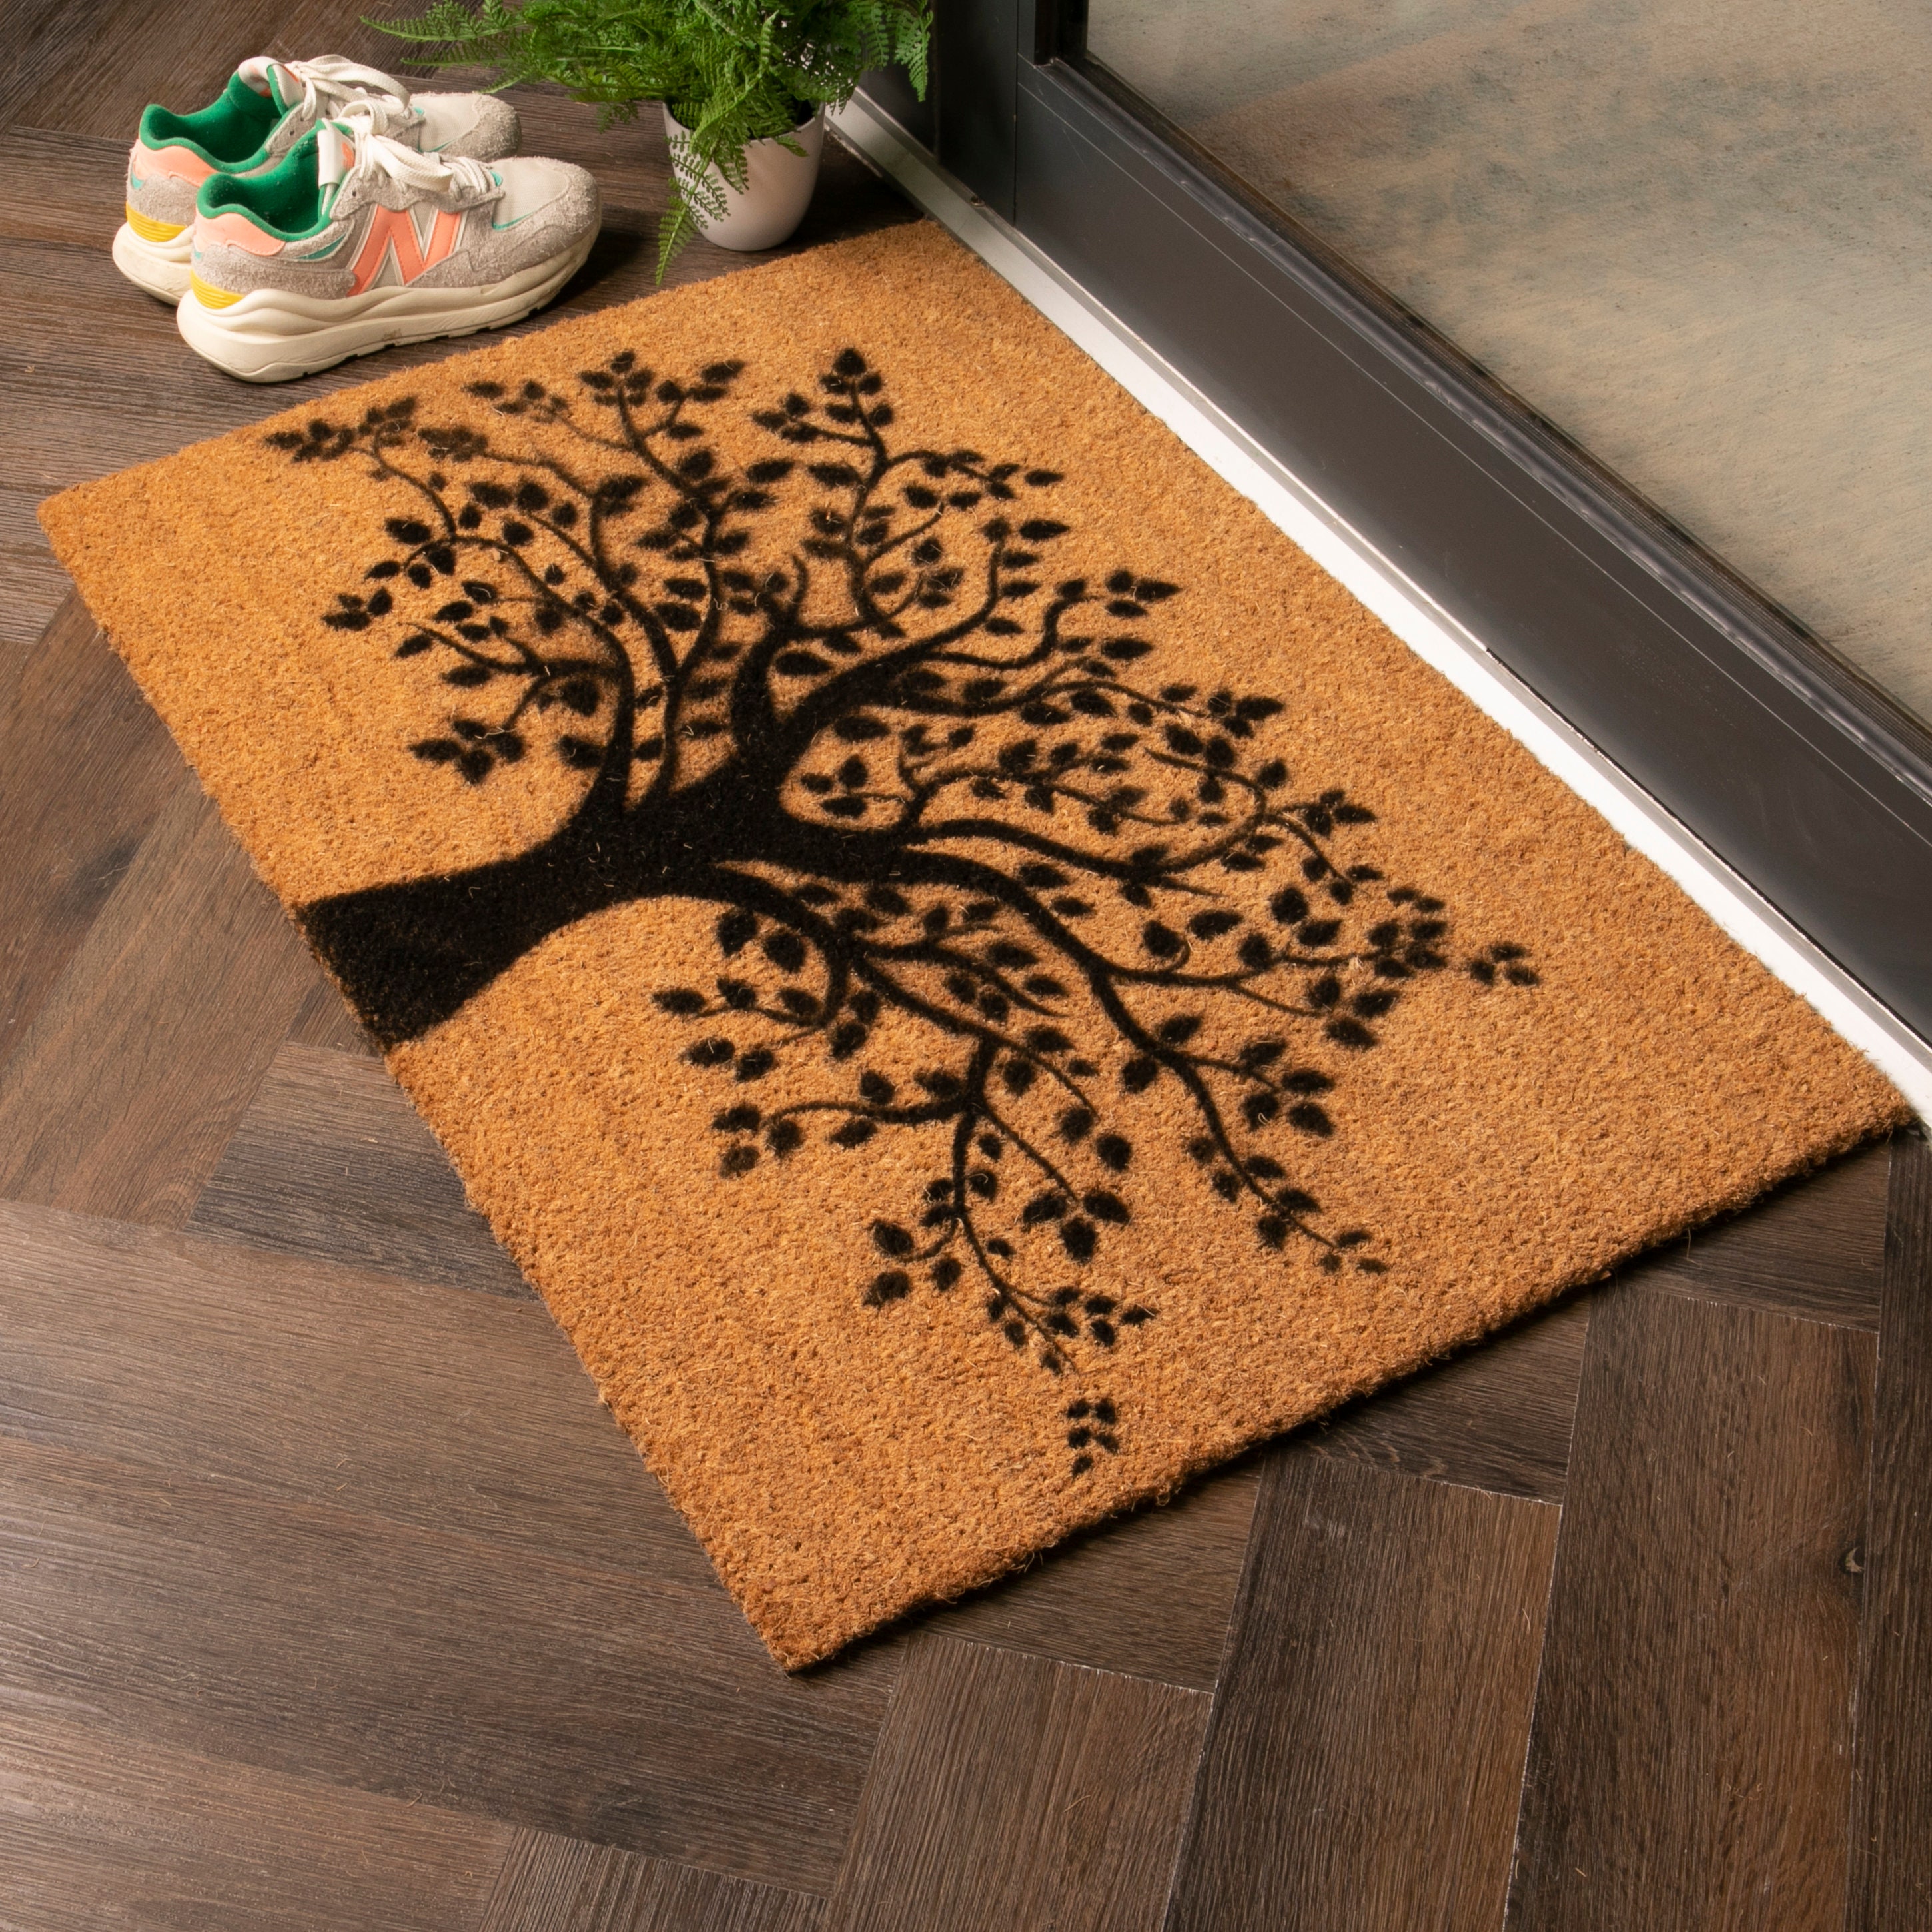 Doormat Personalized Made of Coconut, Dirt Trapping Mat, Housewarming Gift, Door  Mat Indoor 